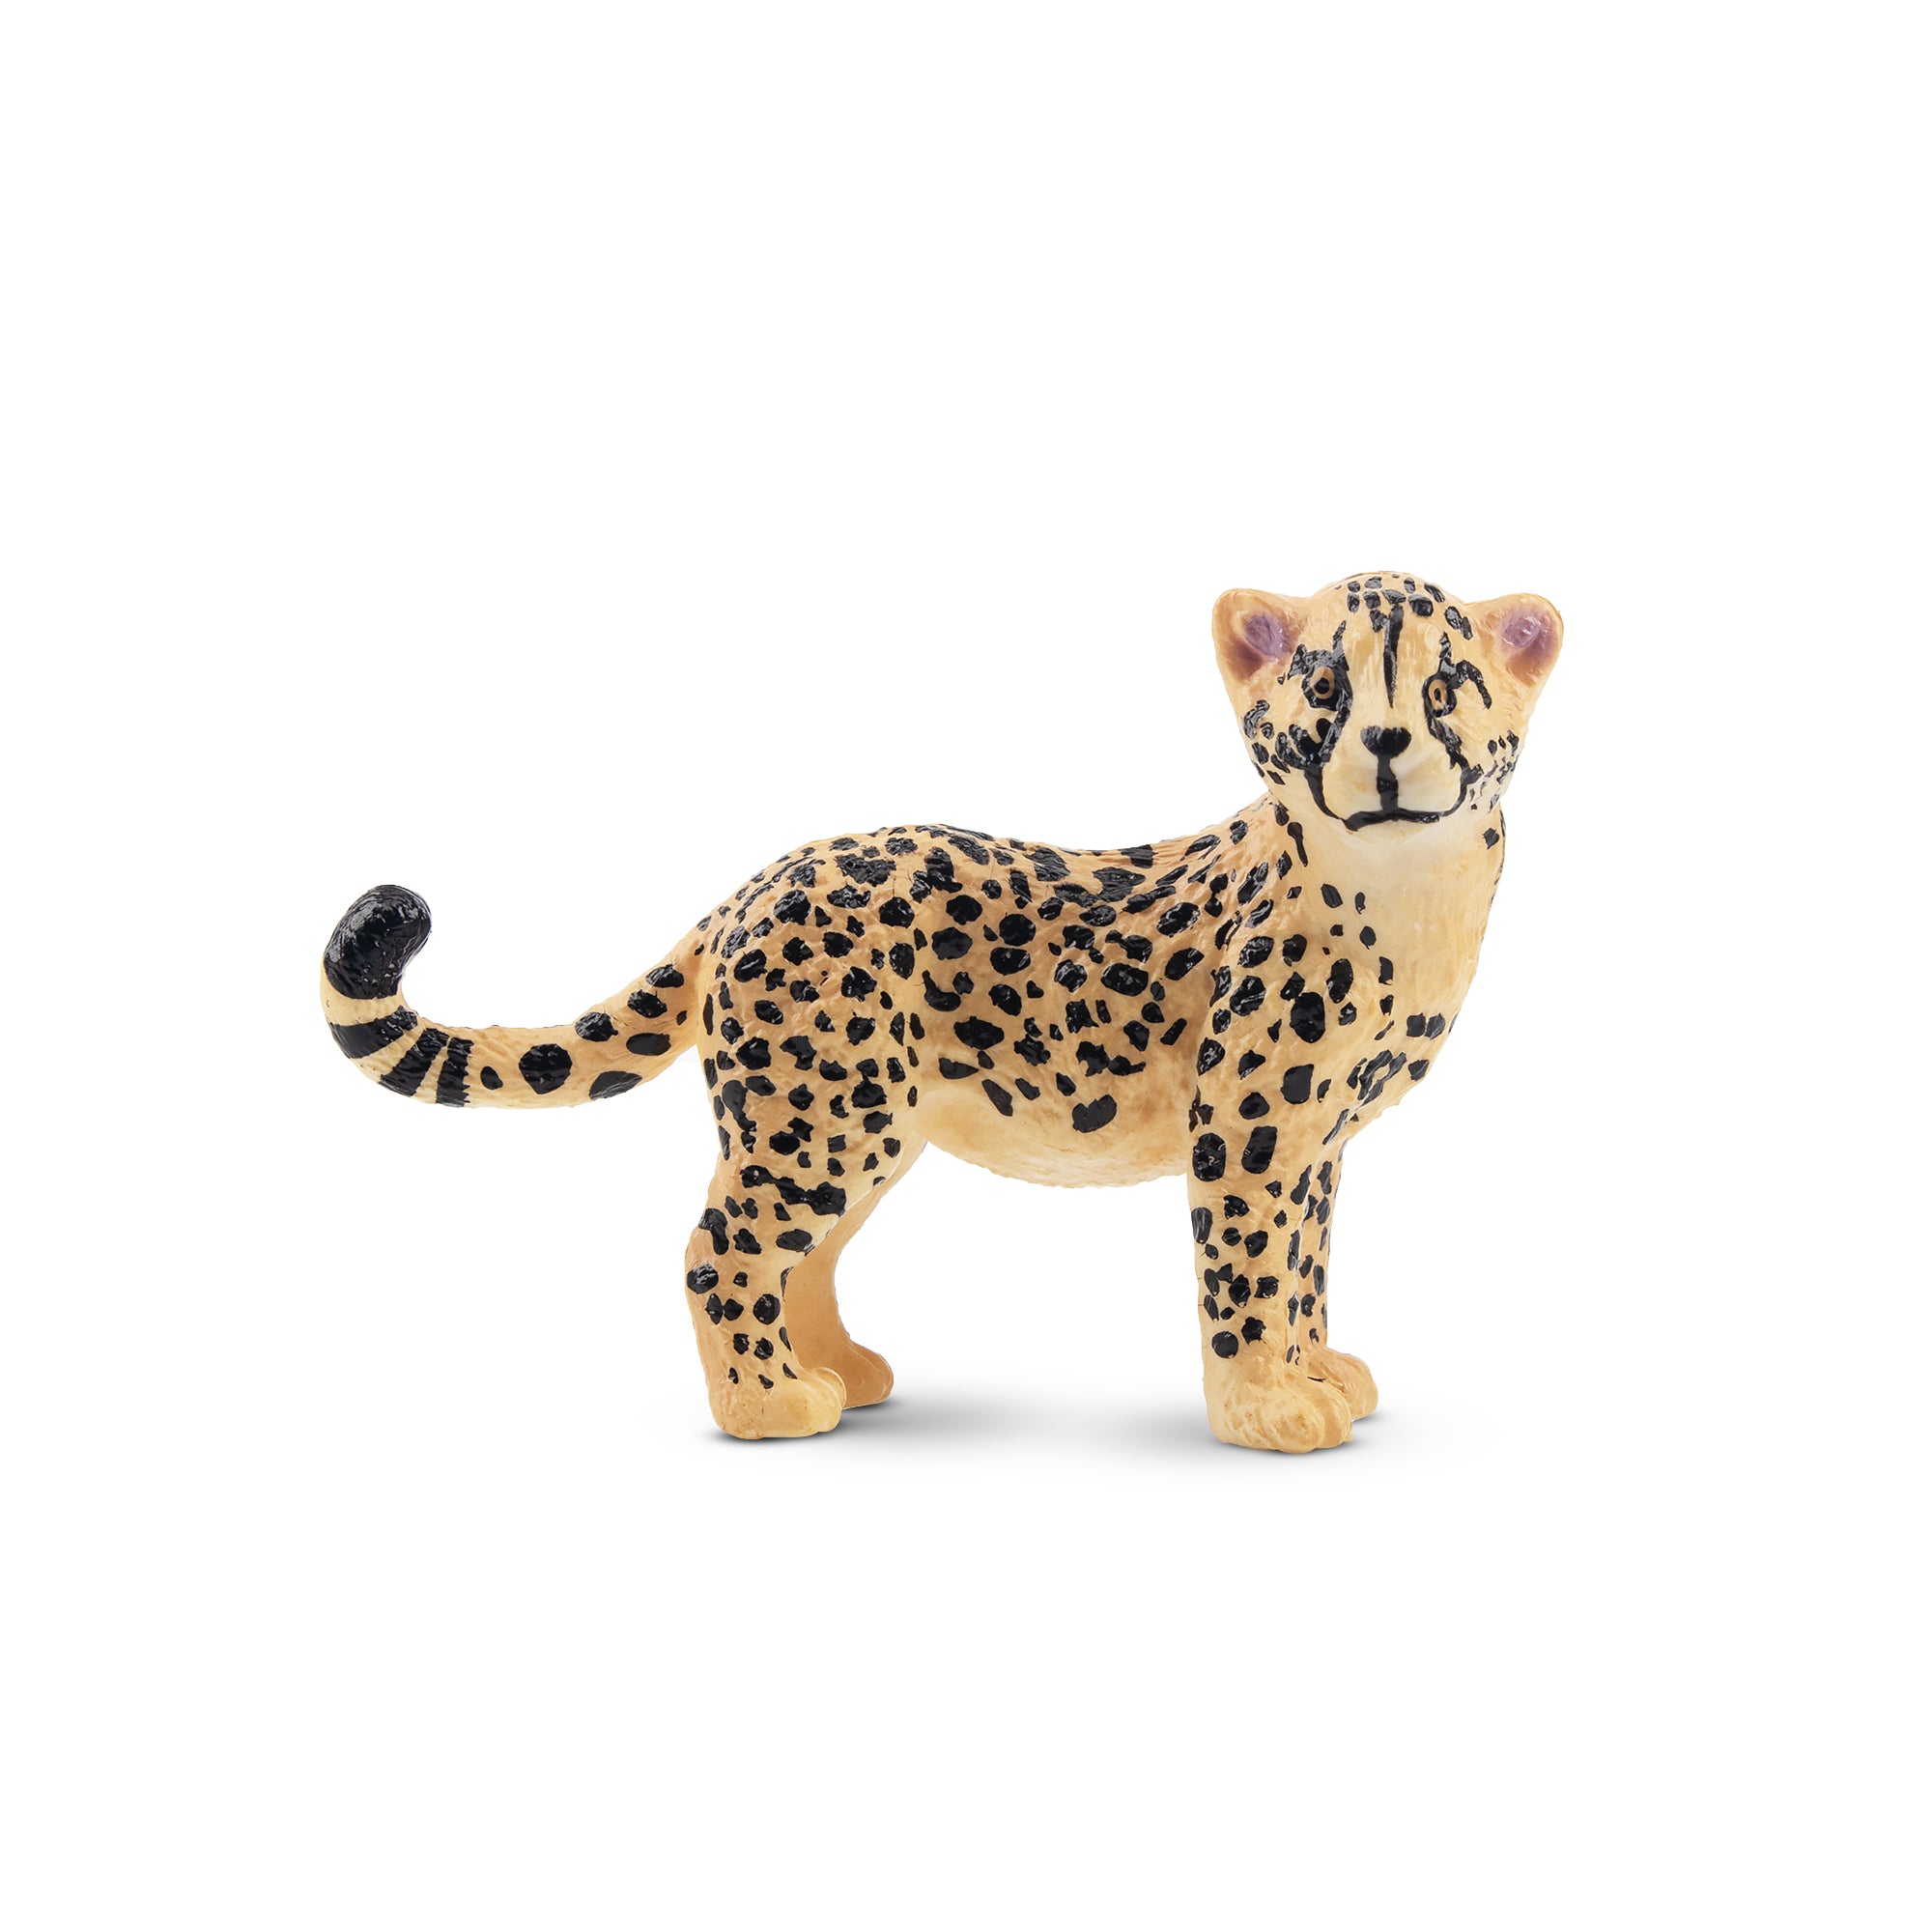 Toymany Cheetah Cub Figurine Toy